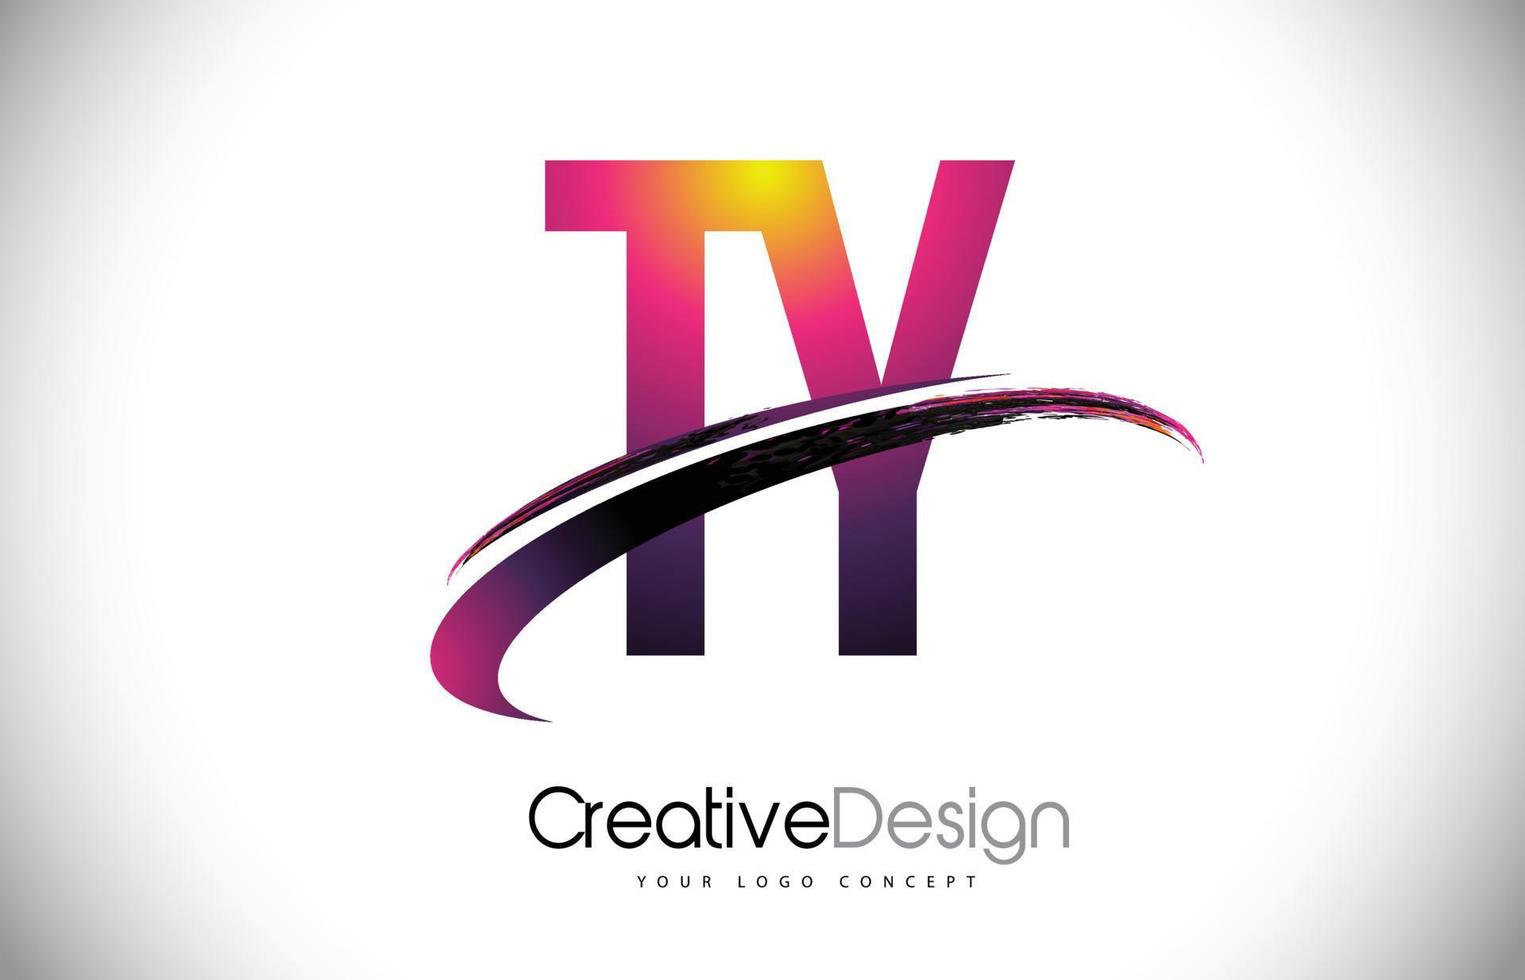 ty ty paarse letter-logo met swoosh-ontwerp. creatieve magenta moderne brieven vector logo.